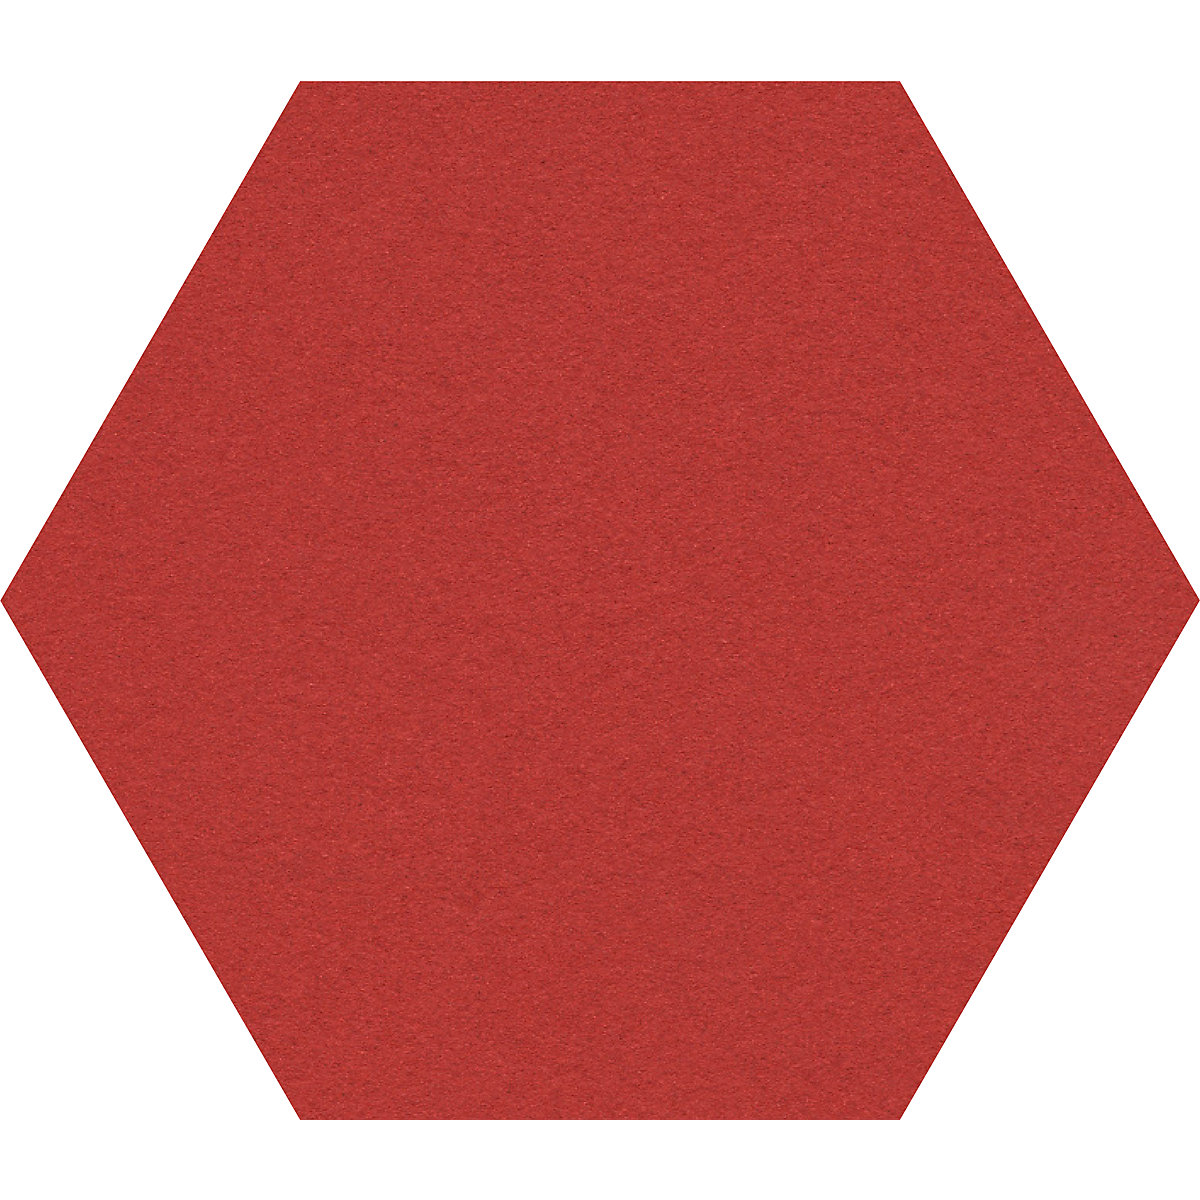 Design-Pinnwand sechseckig Chameleon, Kork, BxH 600 x 600 mm, rot-33